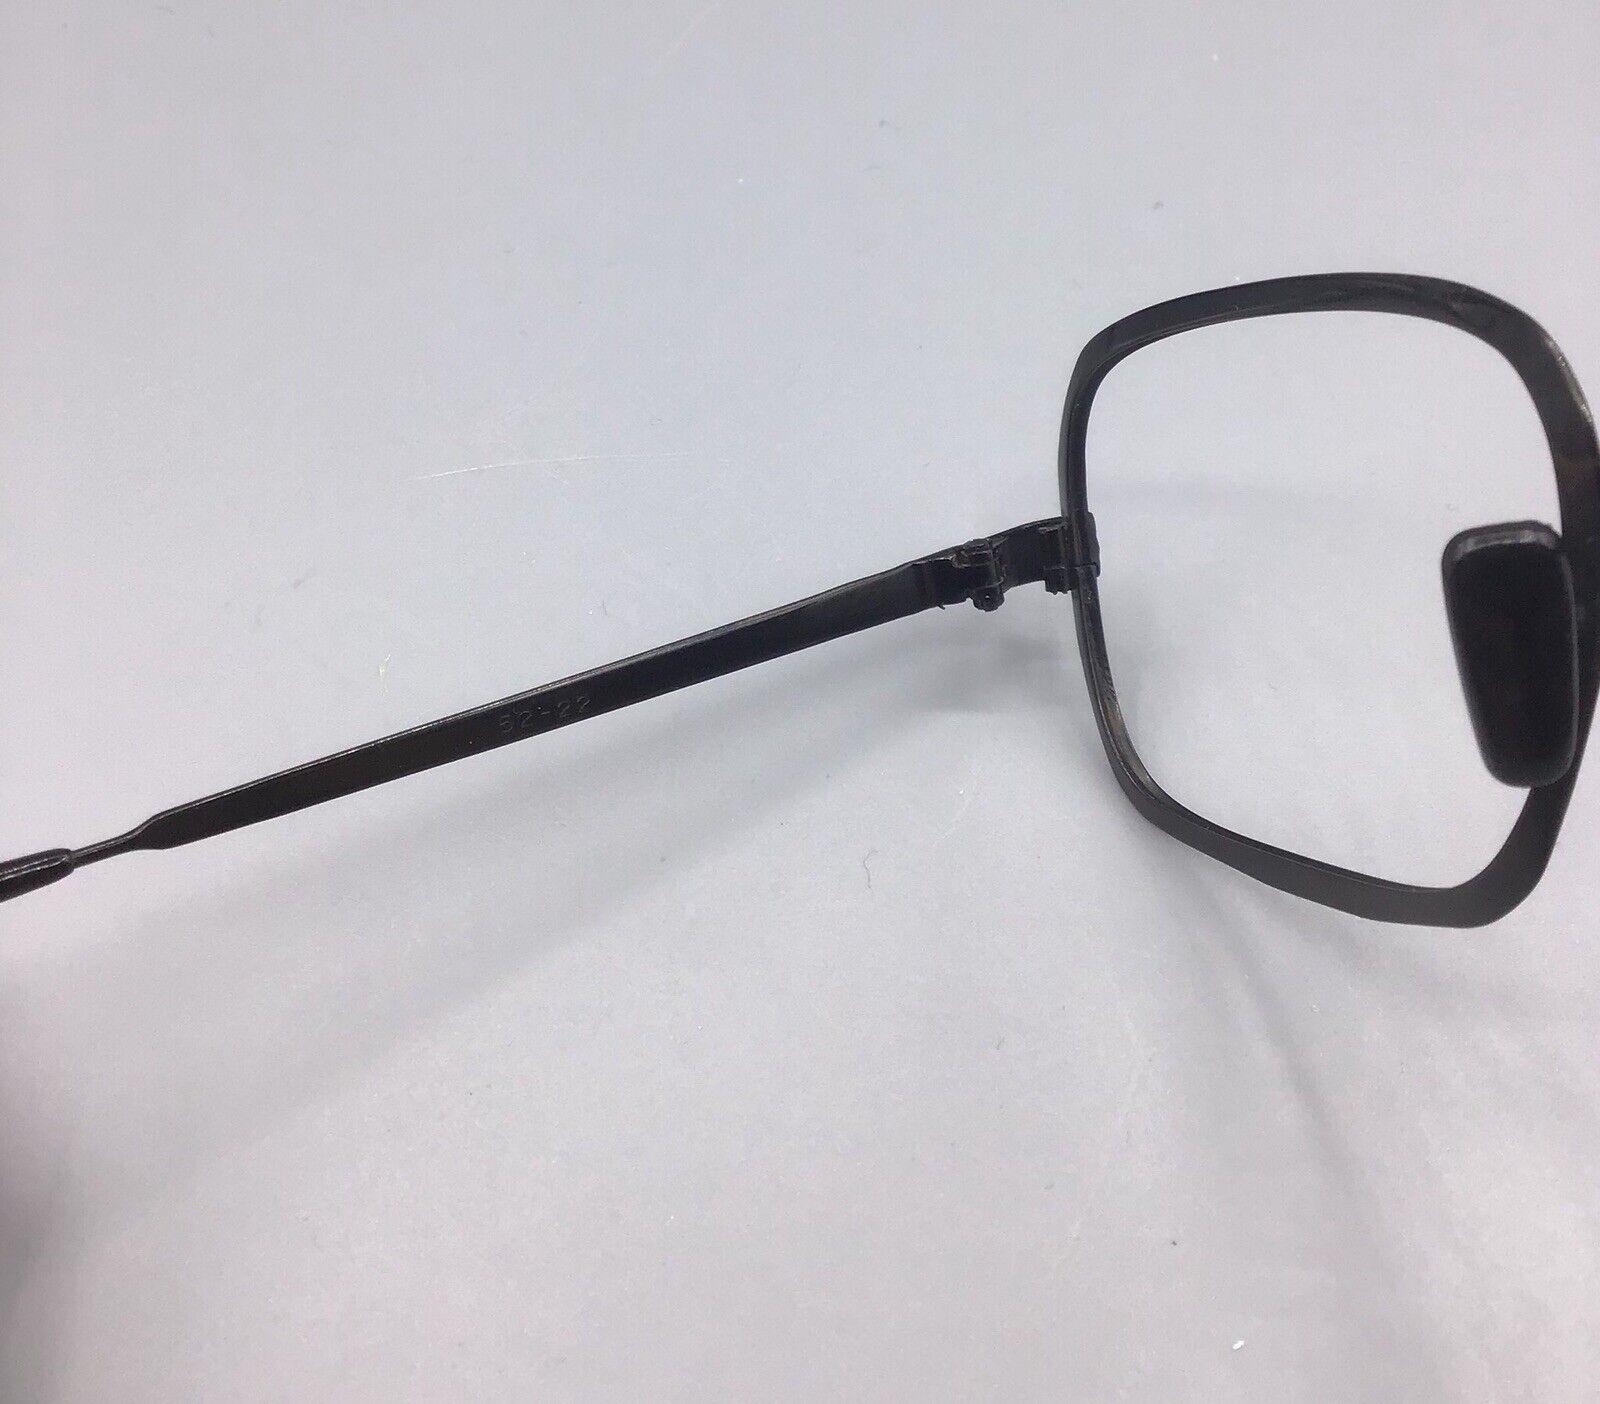 Metalflex occhiale vintage eyewear frame brillen lunettes +case black